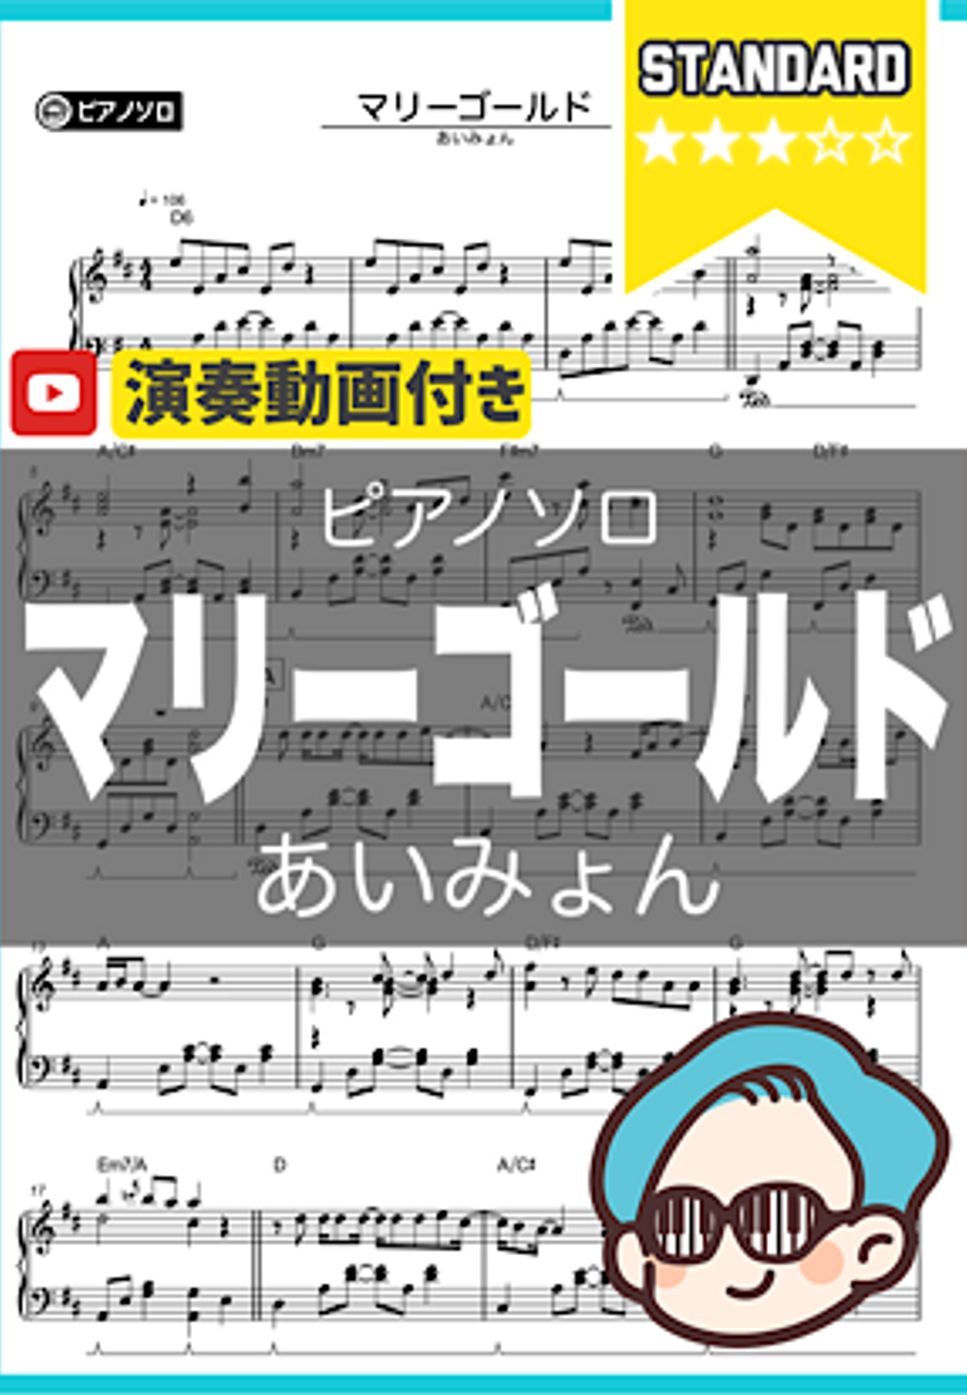 あいみょん - マリーゴールド by シータピアノ